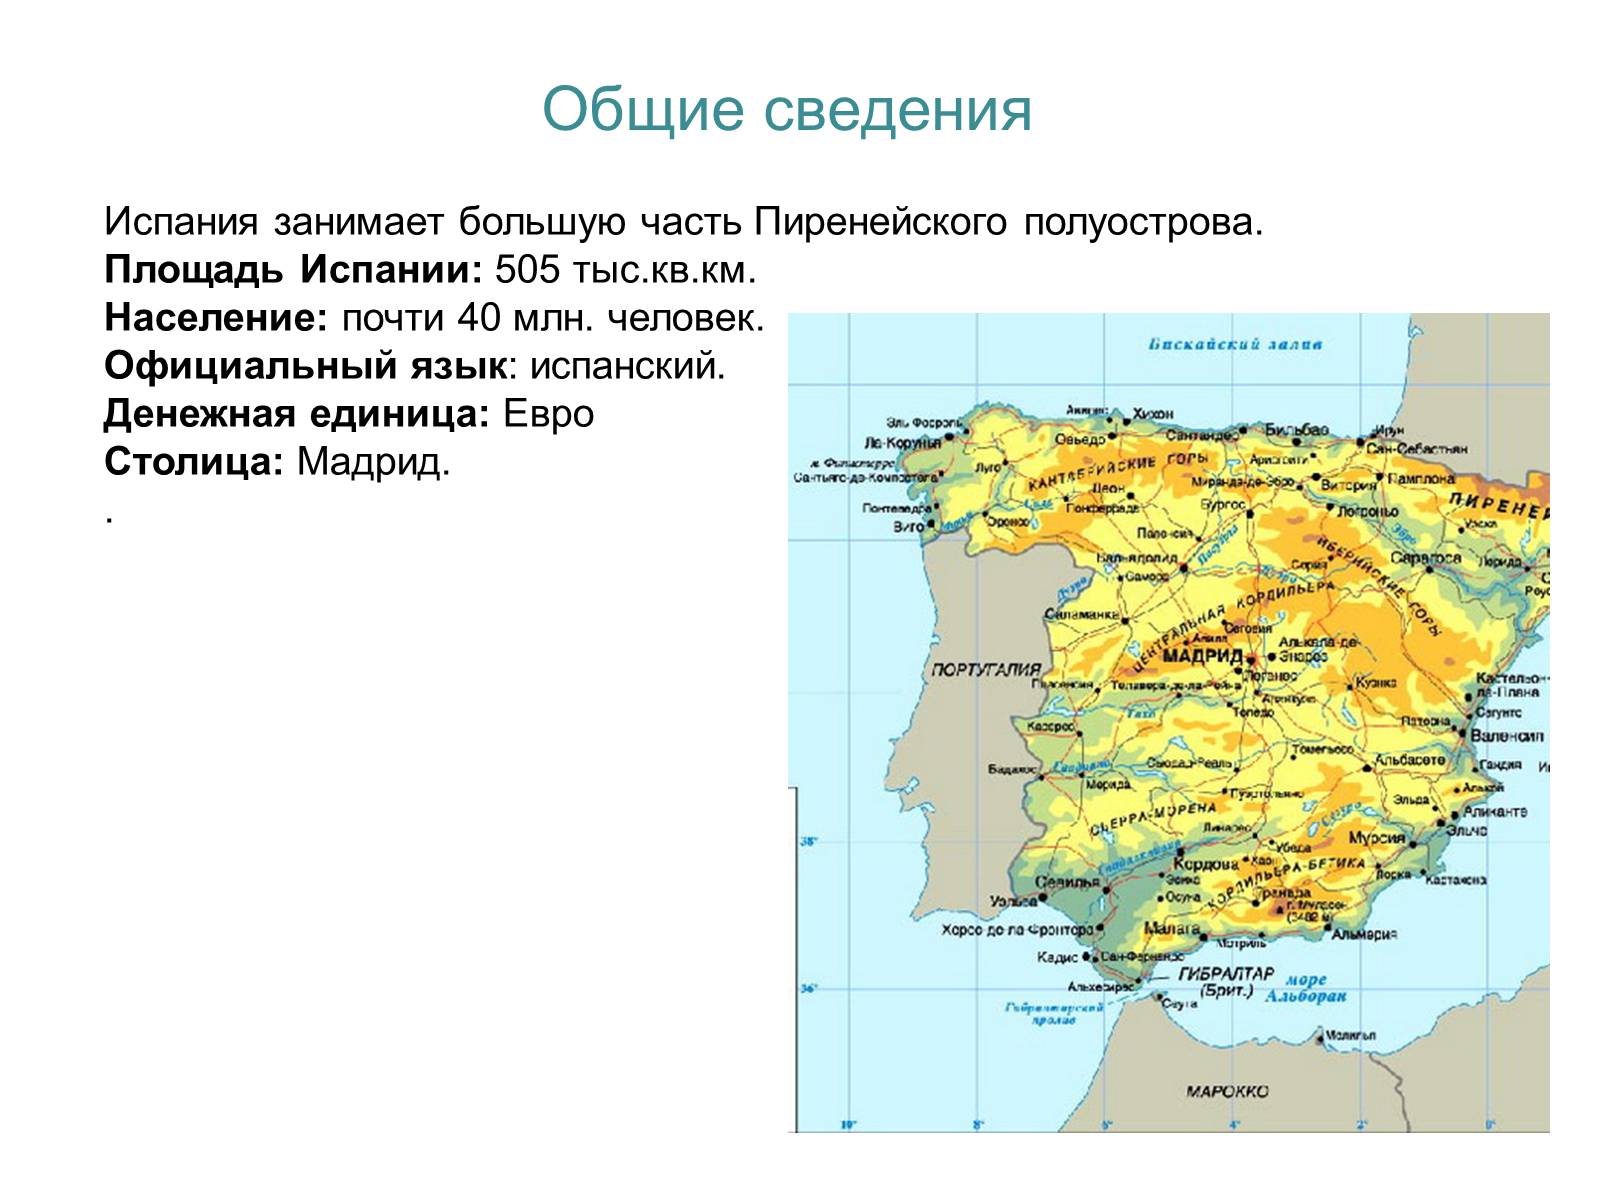 Испания занимает большую часть Пиренейского полуострова